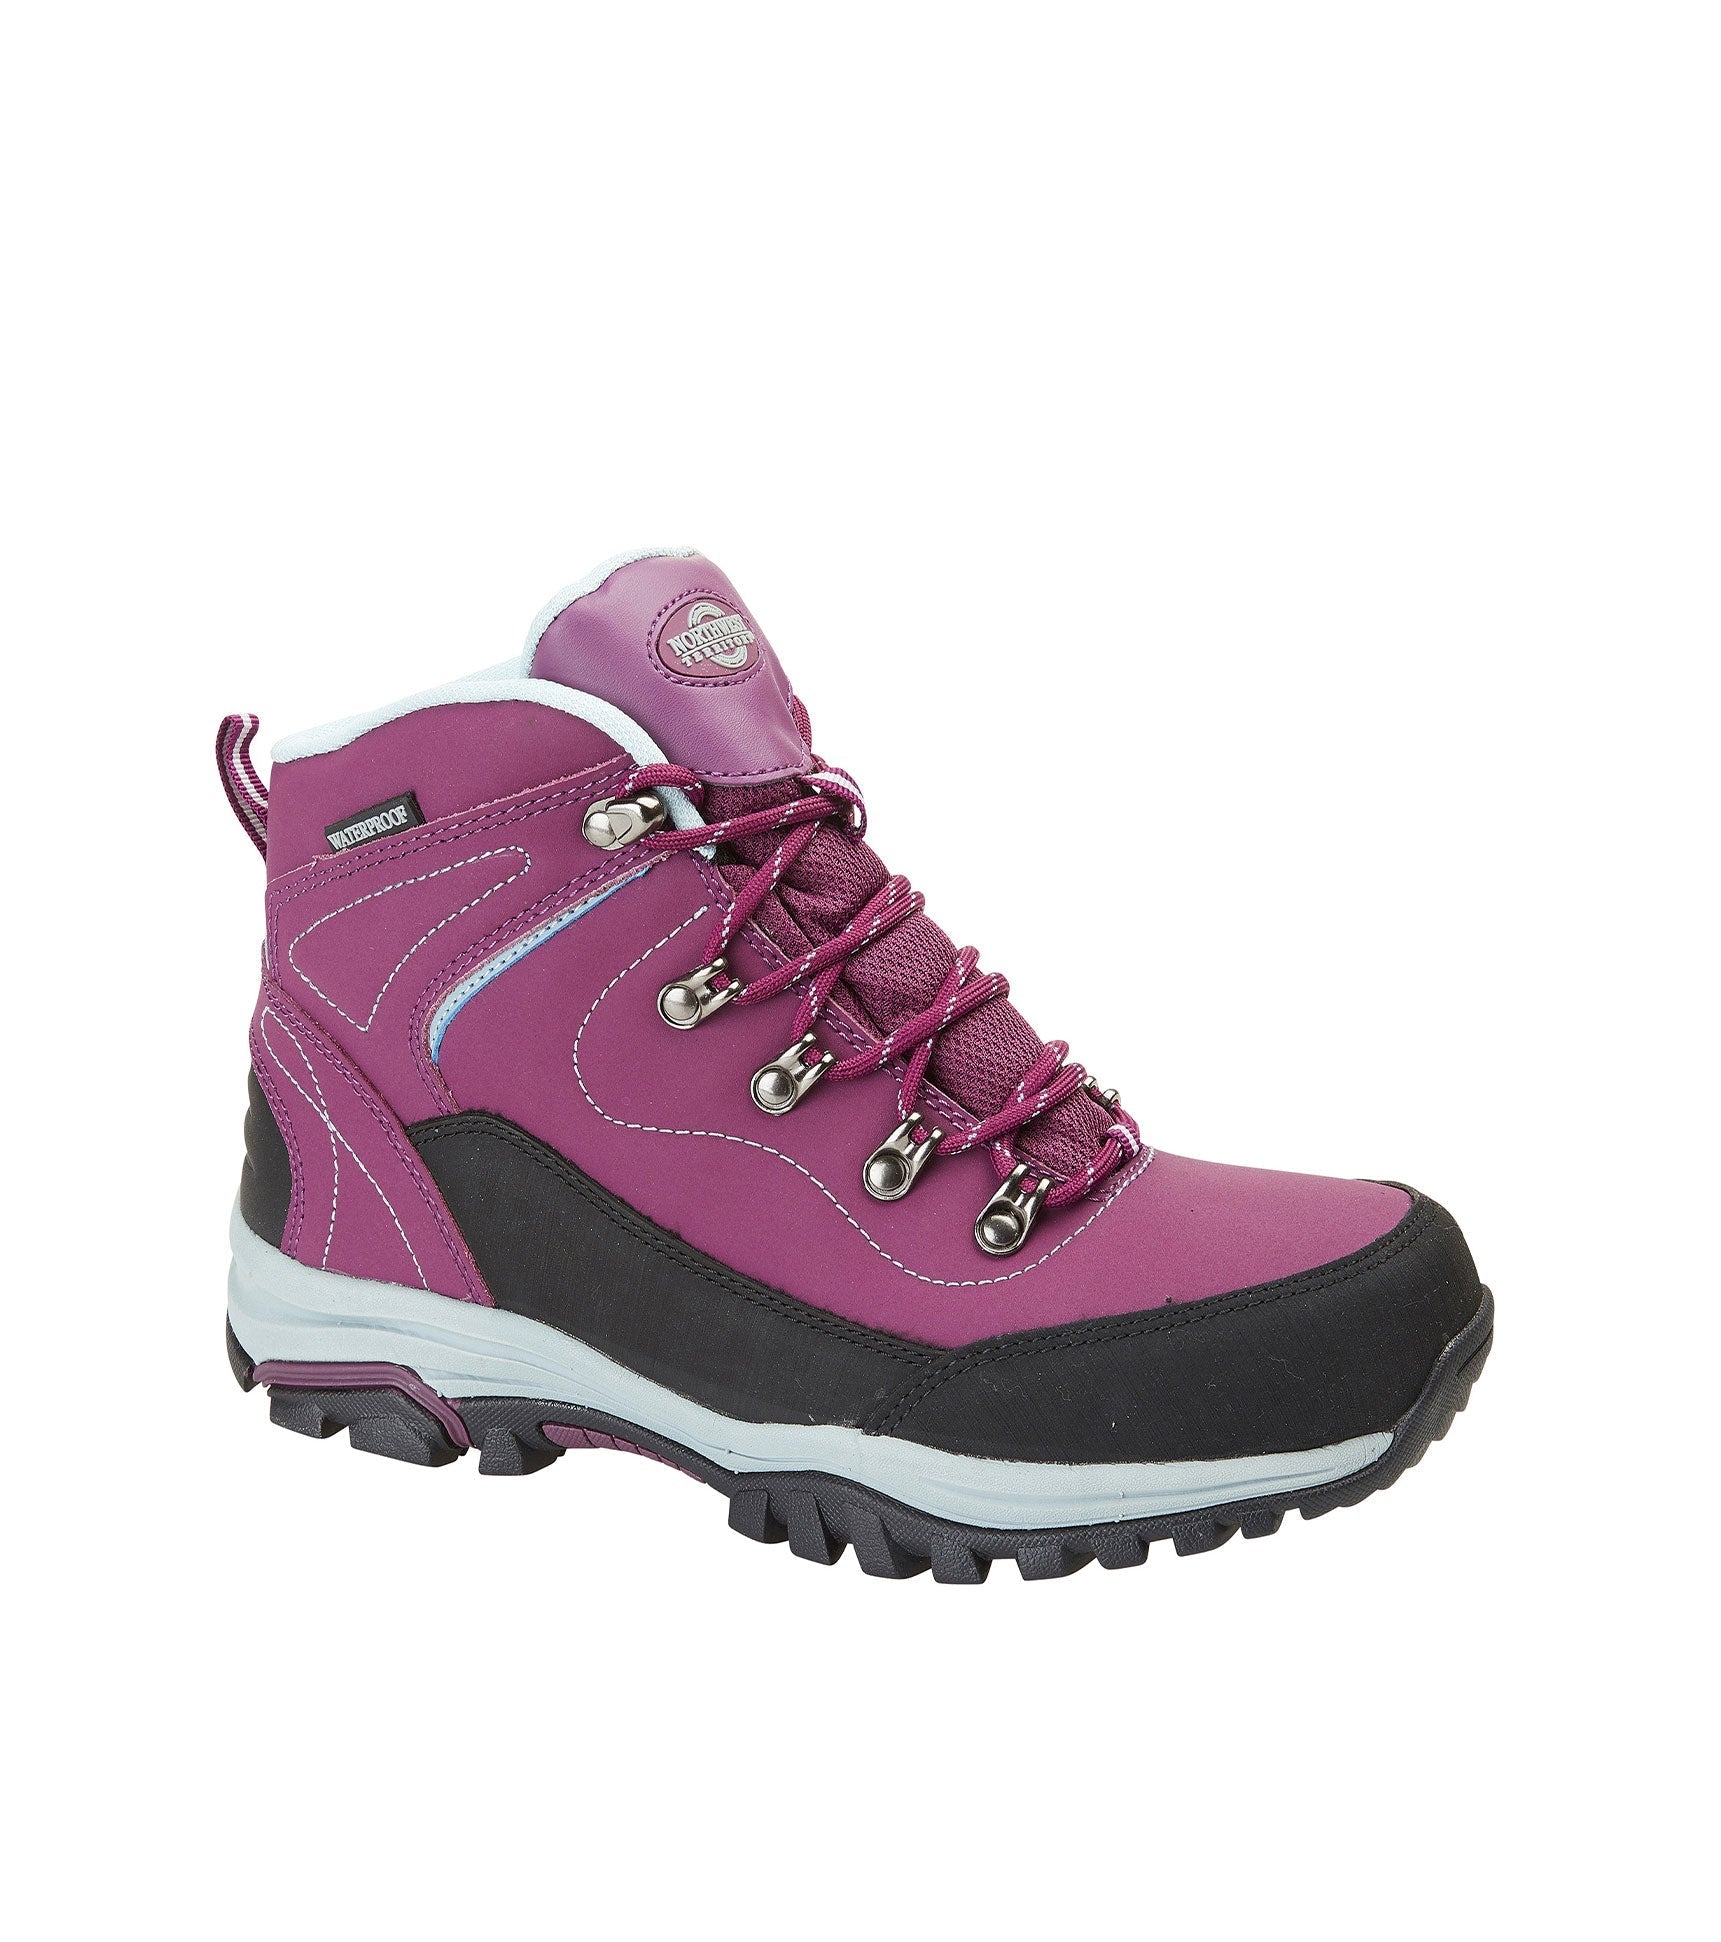 Women's Waterproof Walking Boots